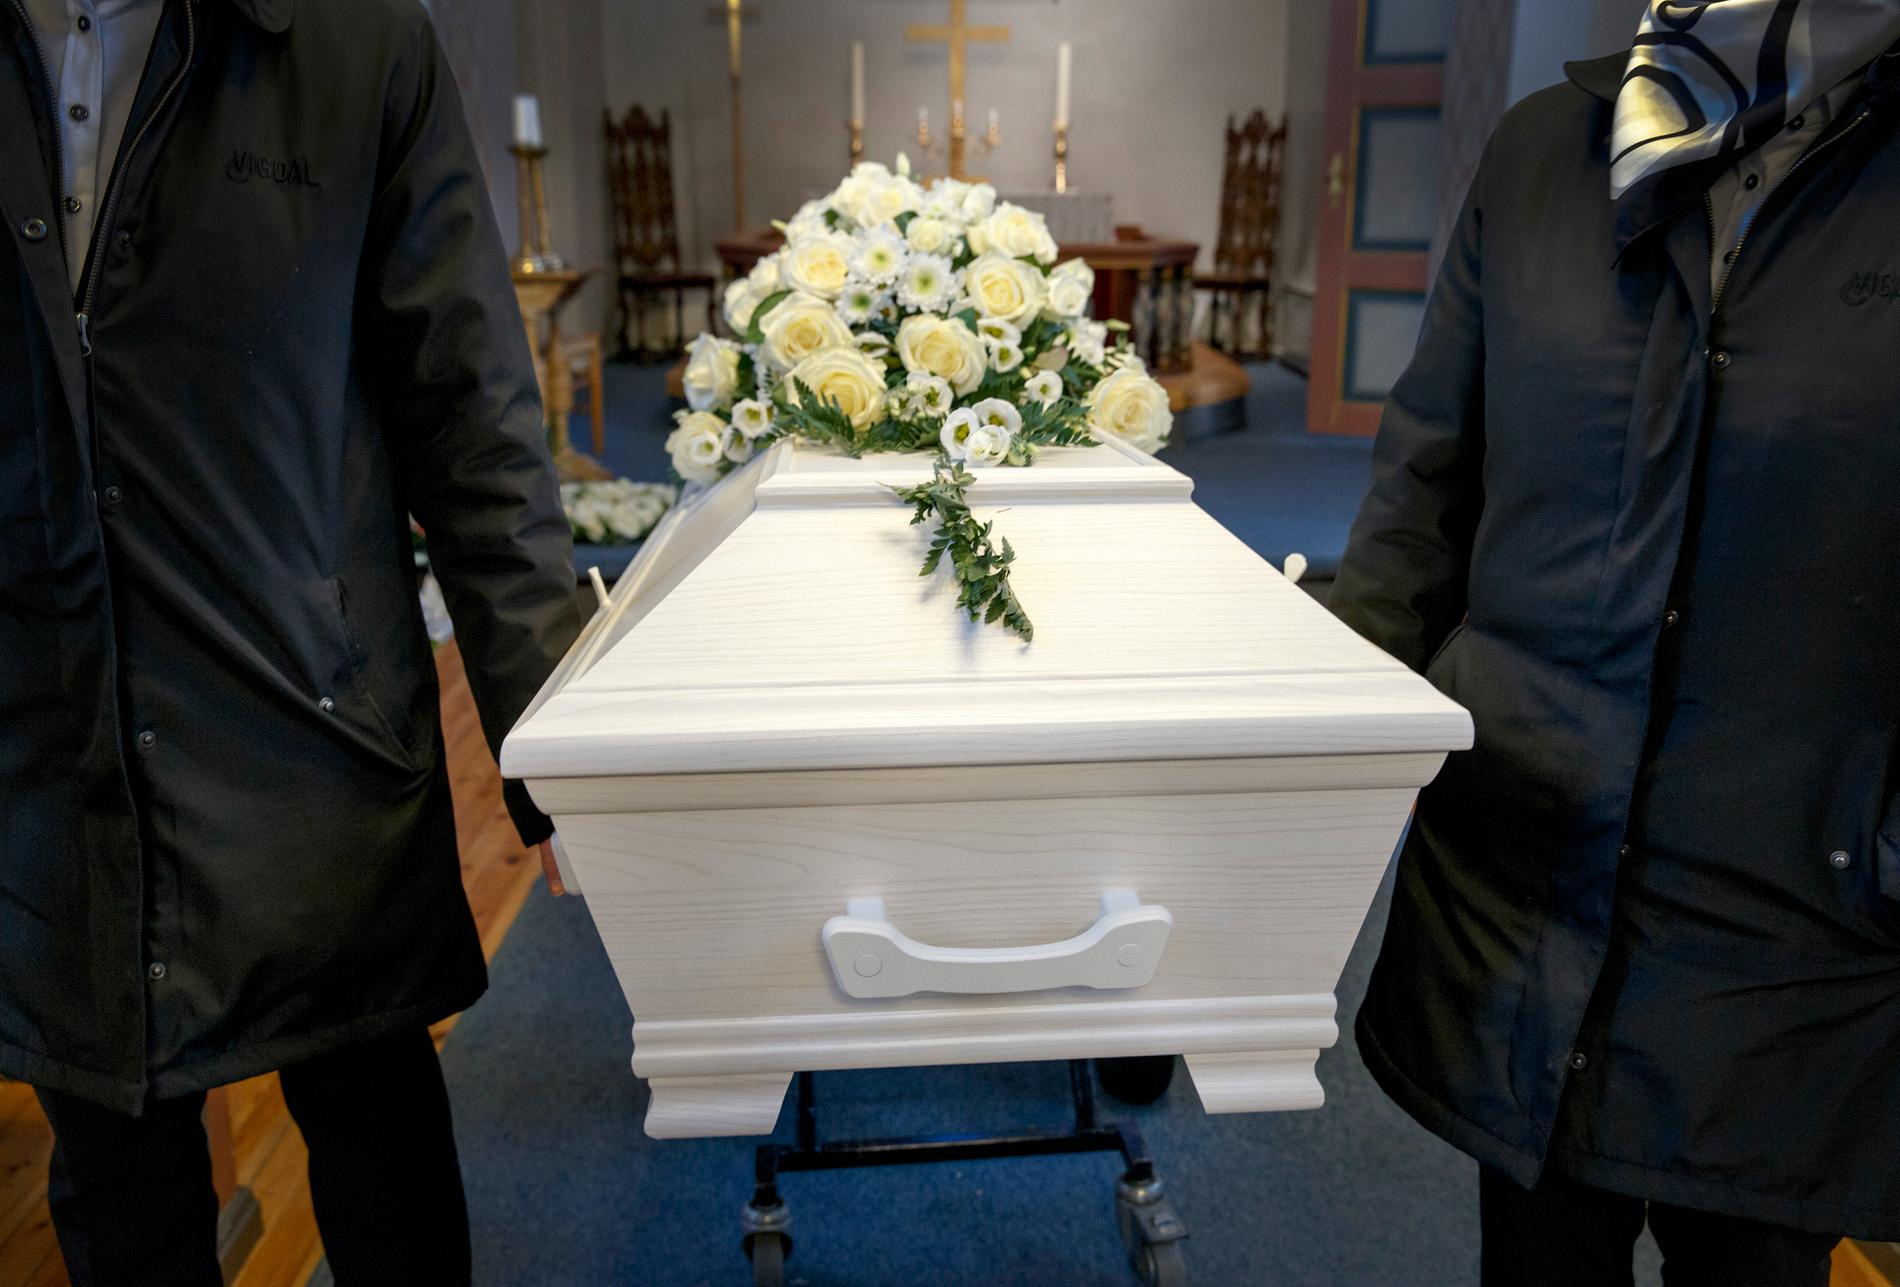 Flera begravningsbyråer i Sverige har nu anordnat begravningar av människor som avlidit av covid-19. Bilden är tagen i ett annat sammanhang.